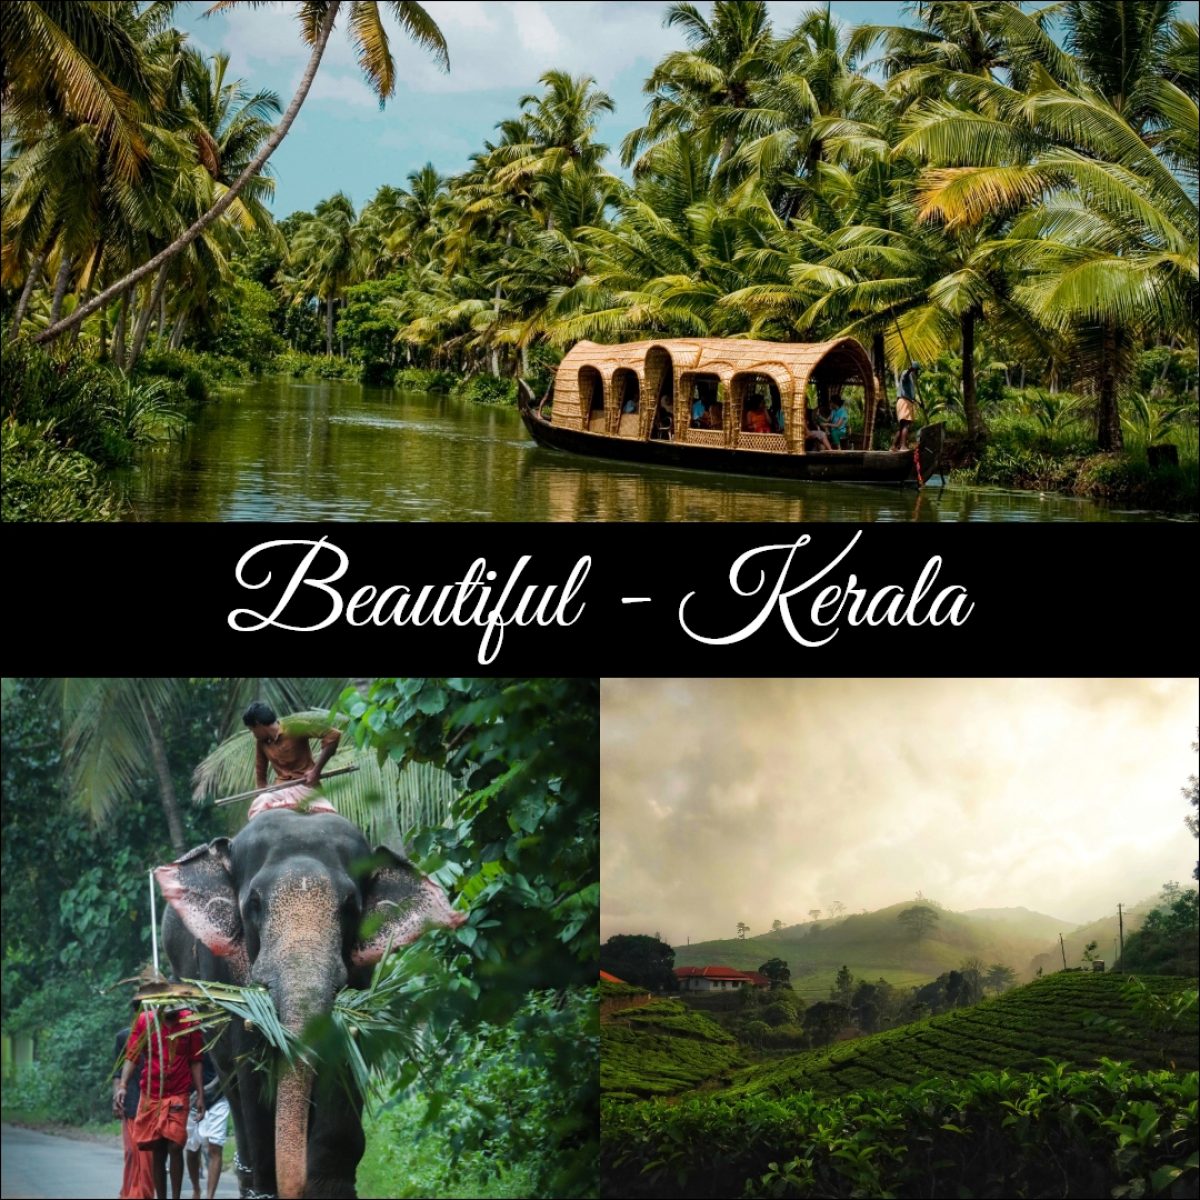 Beautiful - Kerala